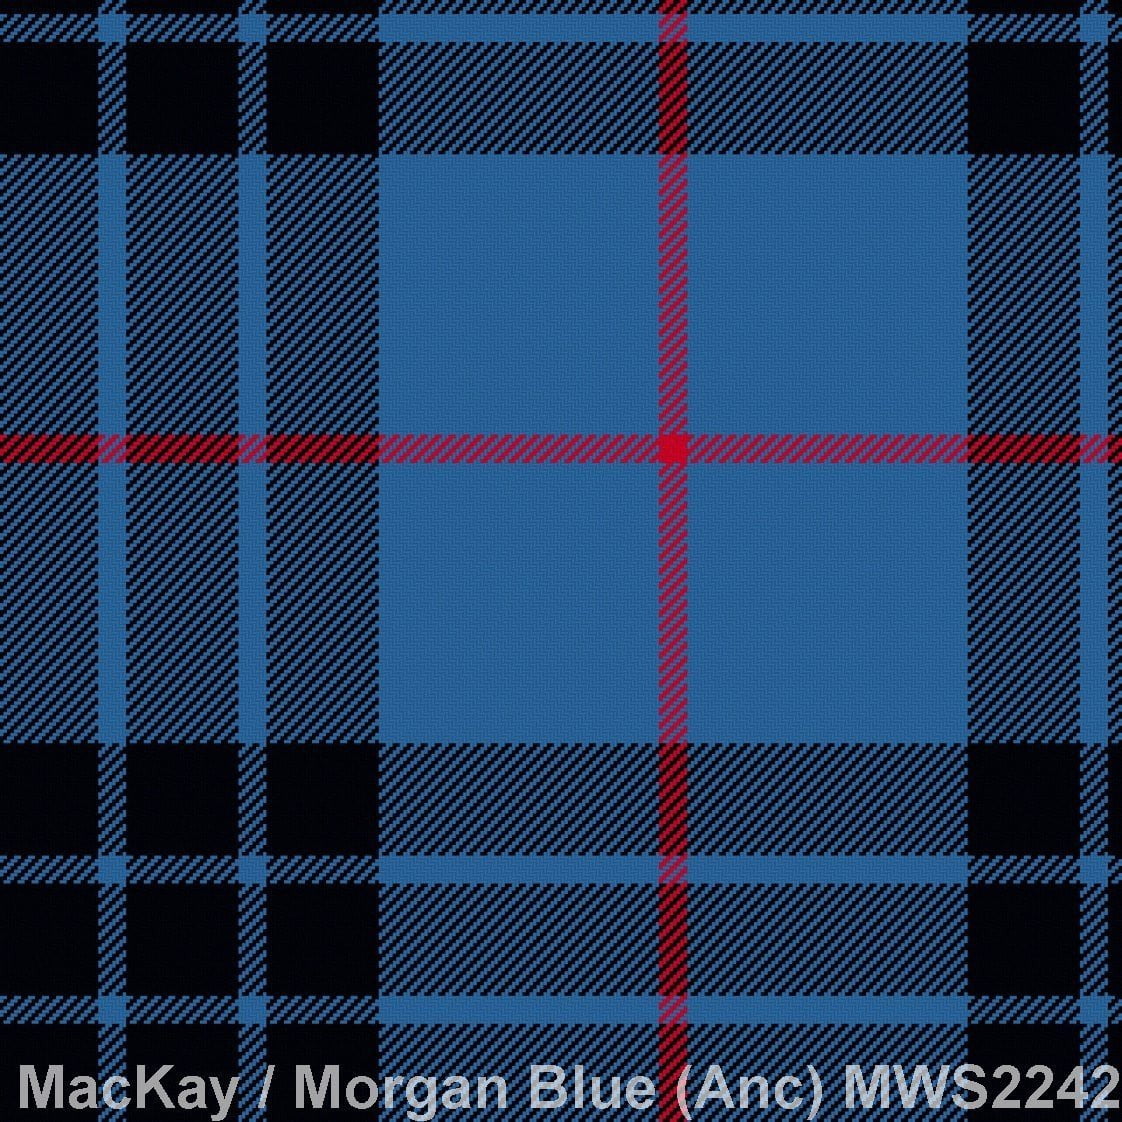 MacKay/Morgan Blue Ancient